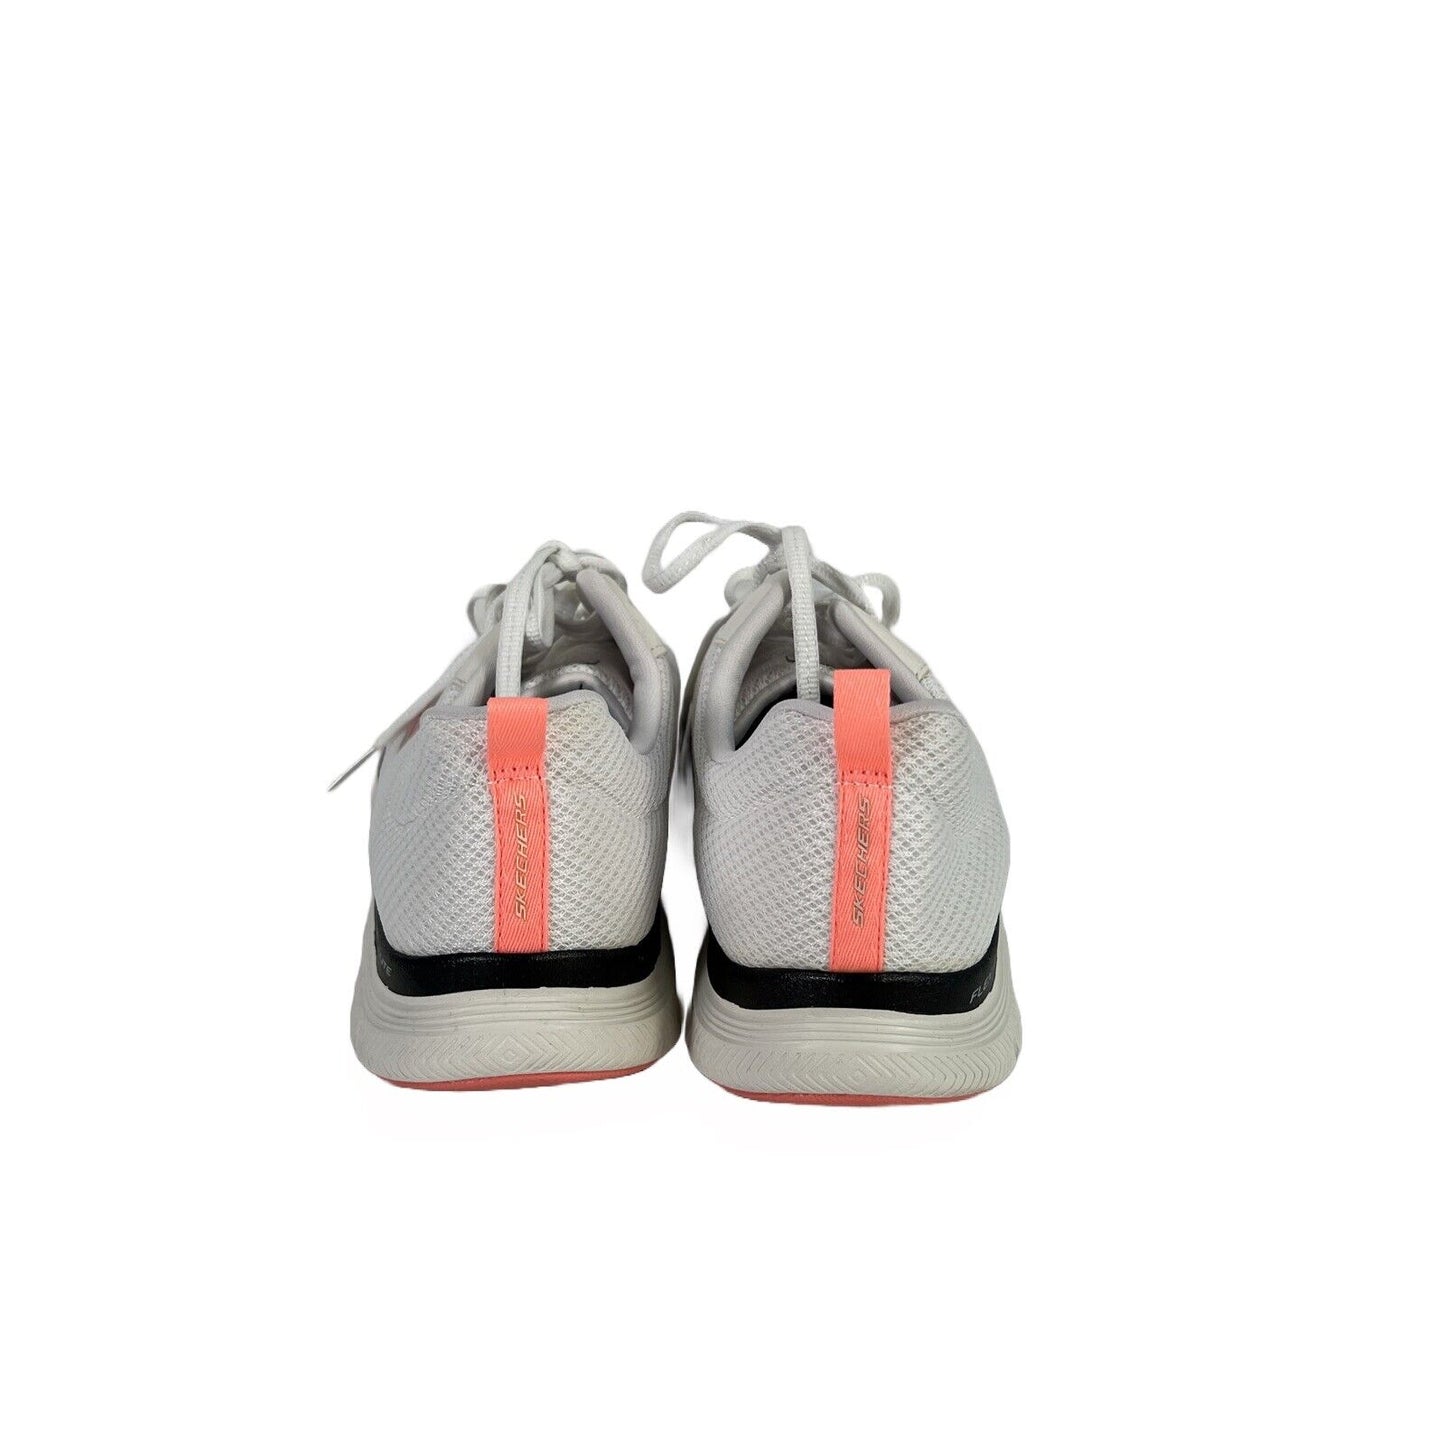 Skechers Women's White Flex Lite Lace Up Athletic Shoes - 9.5